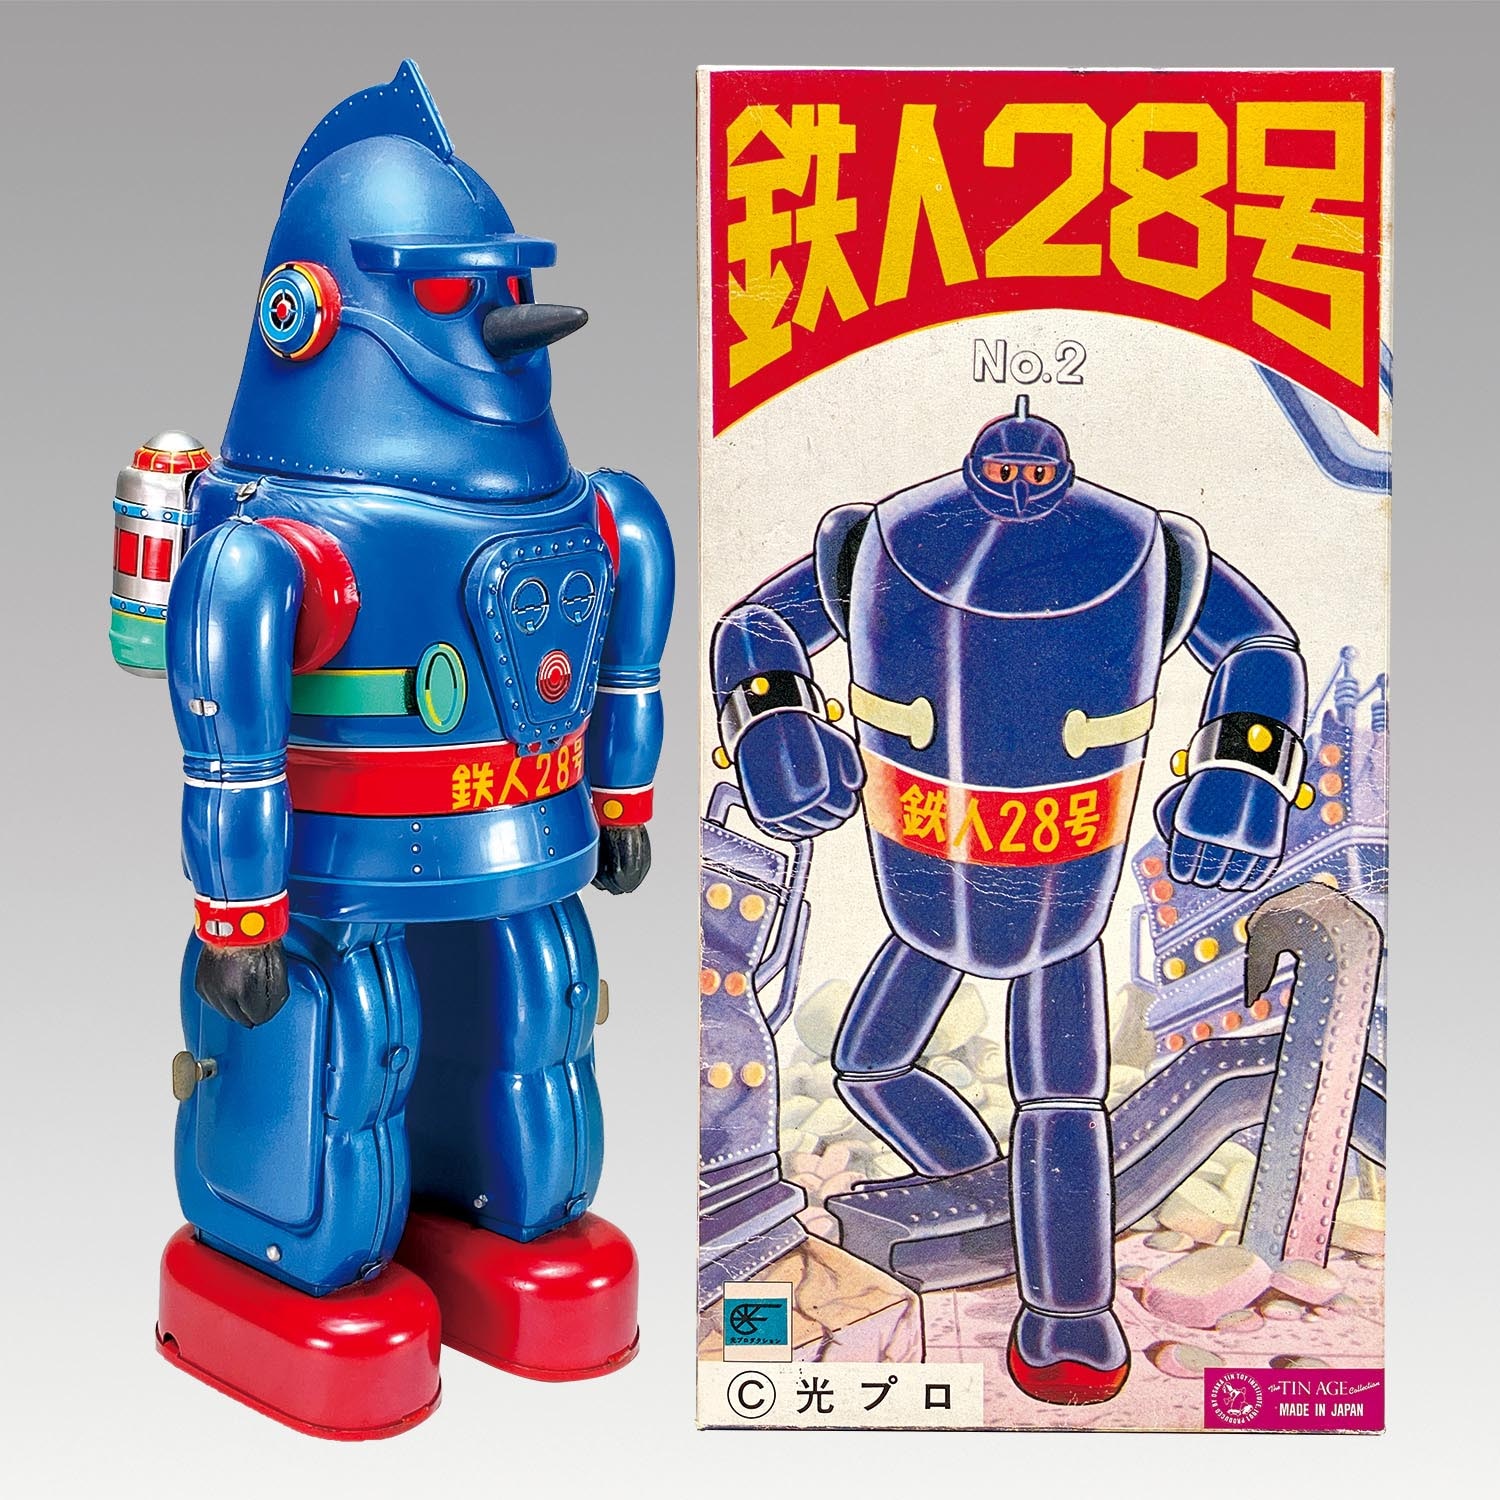 鉄人28号 No.2 大阪ブリキ玩具資料室 復刻シリーズ